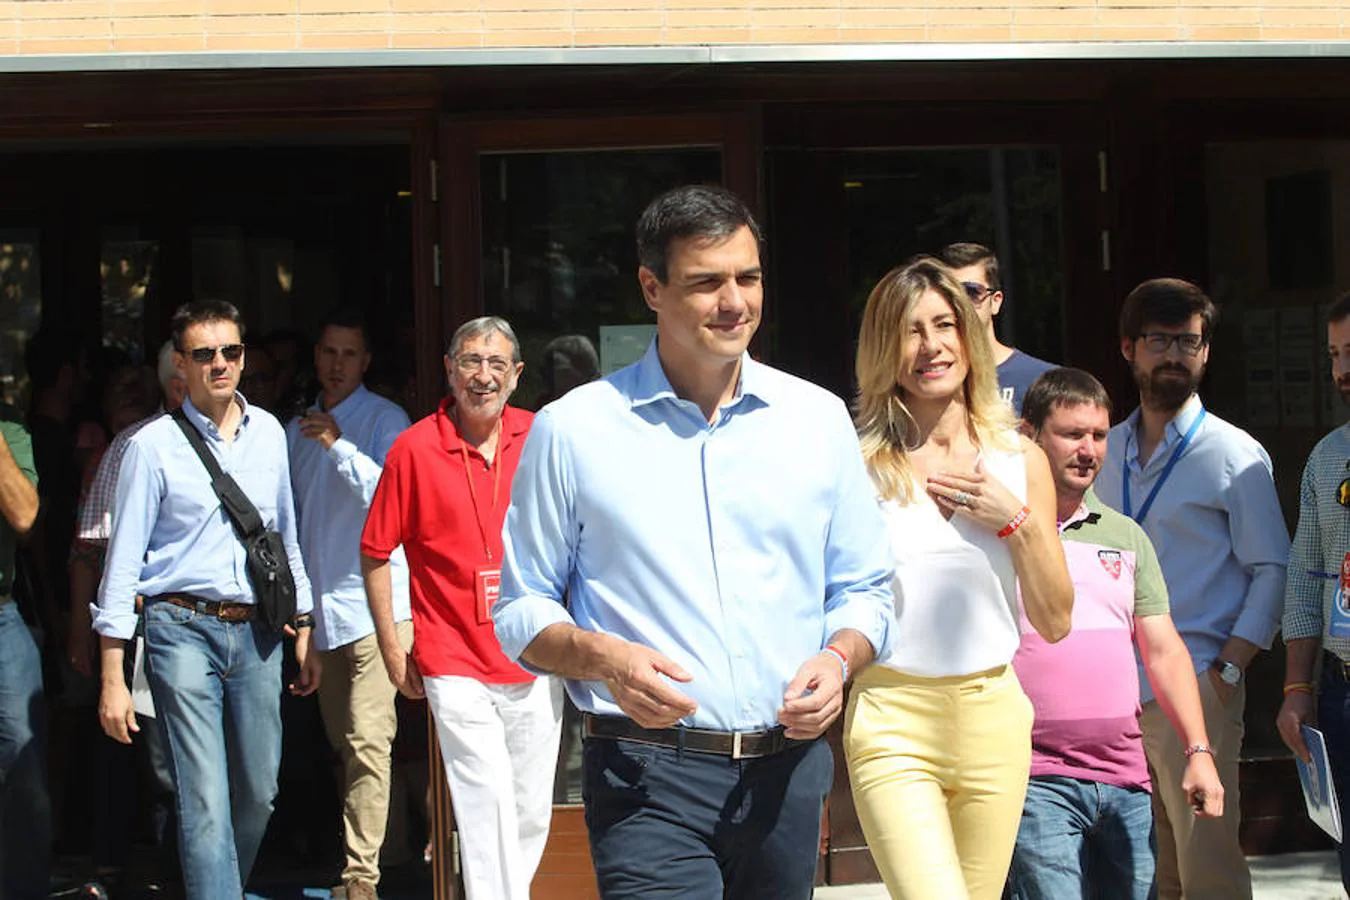 Pedro Sánchez acudió a votar junto a su mujer, Begoña Gómez, sobre las 11.10 horas en el centro cultural Volturno del municipio madrileño de Pozuelo de Alarcón 